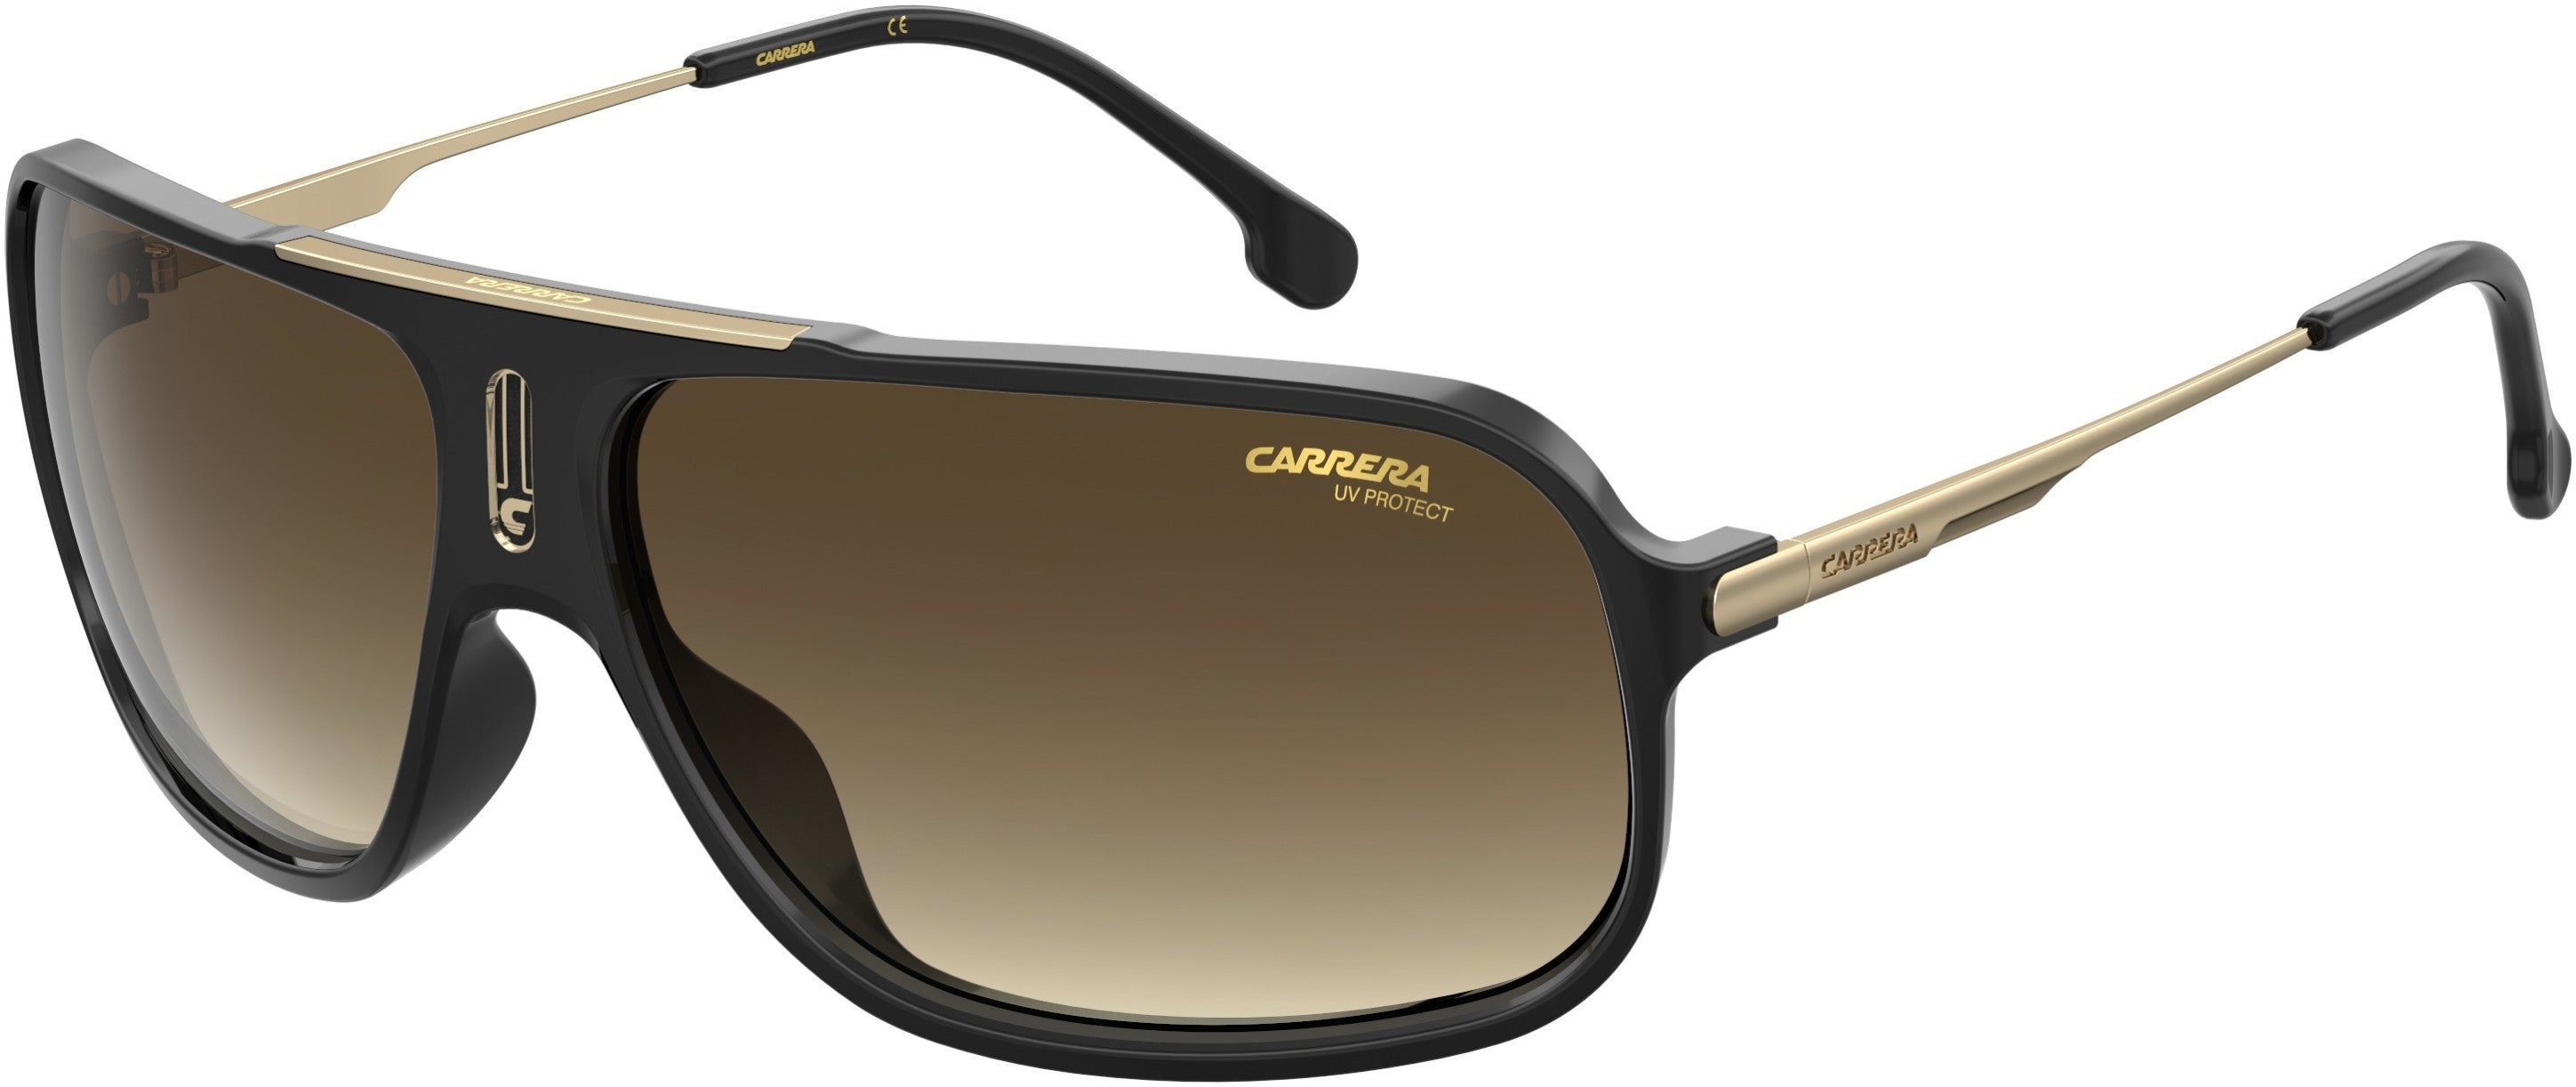 Carrera Cool 65 Rectangular Sunglasses 0807-0807  Black (HA Brown Gradient)